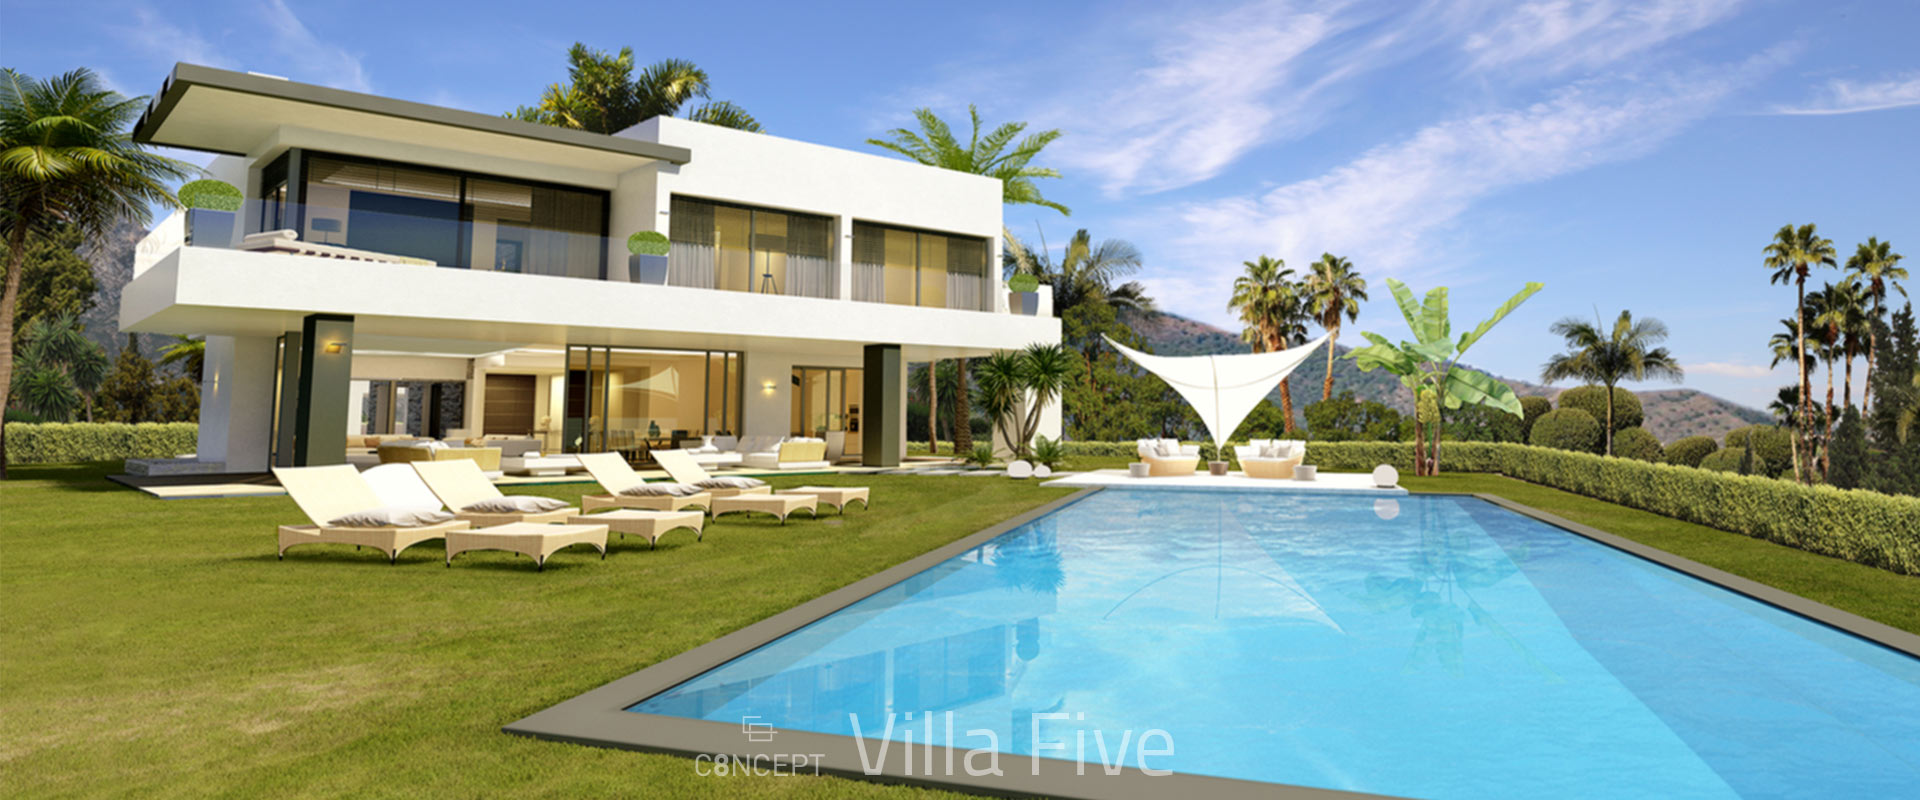 villa5-02.jpg (251 KB)